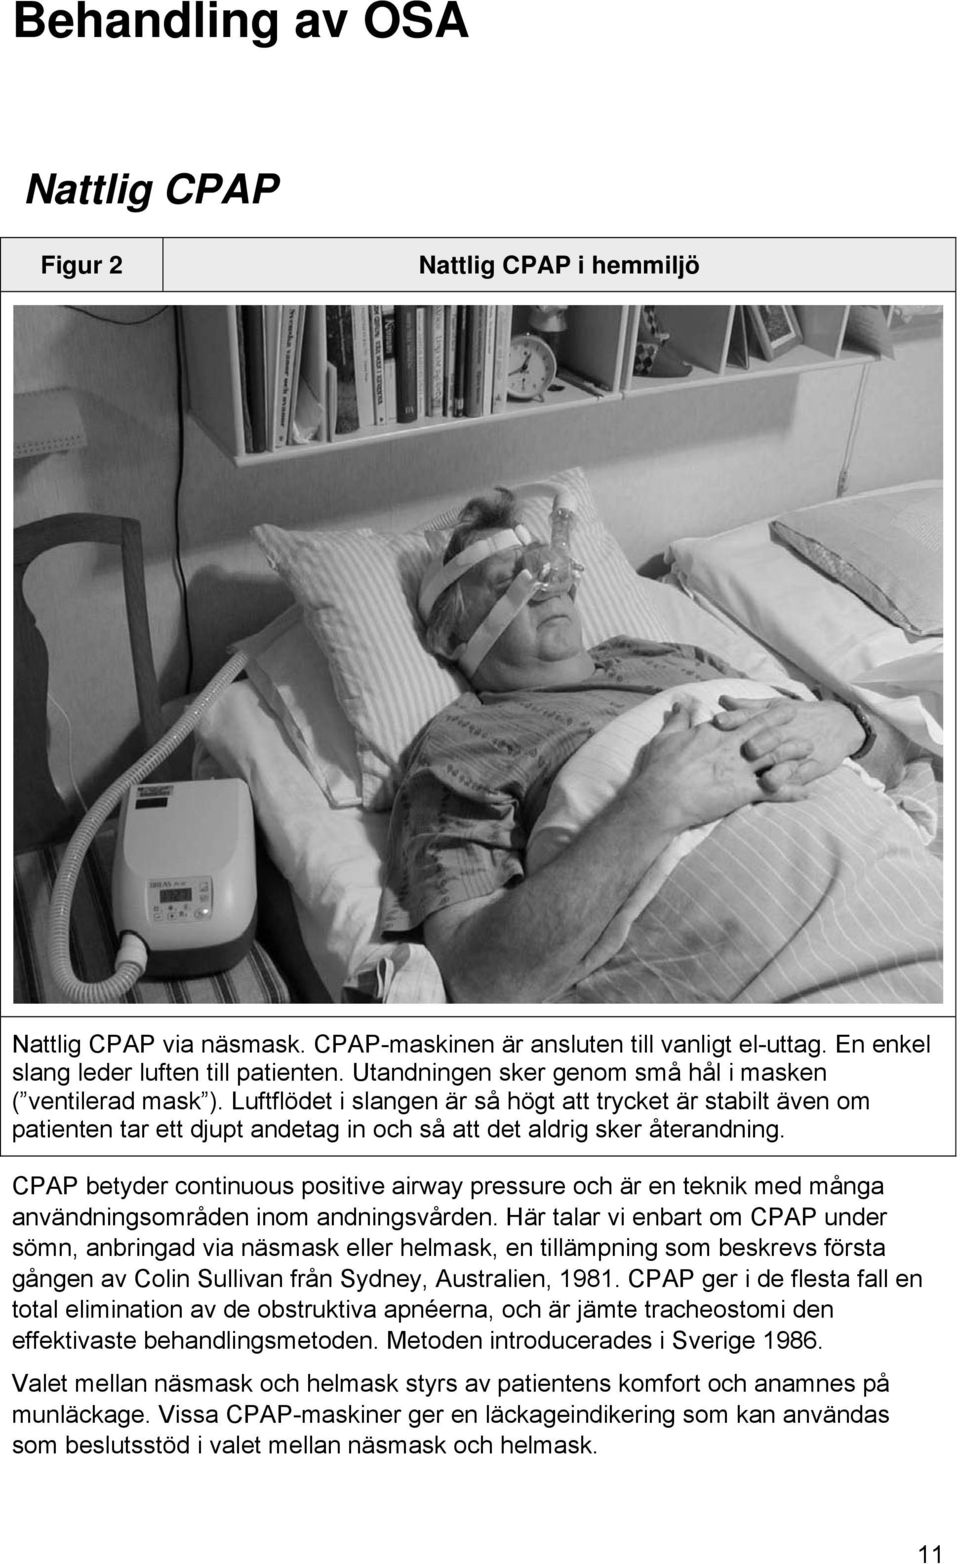 CPAP betyder continuous positive airway pressure och är en teknik med många användningsområden inom andningsvården.